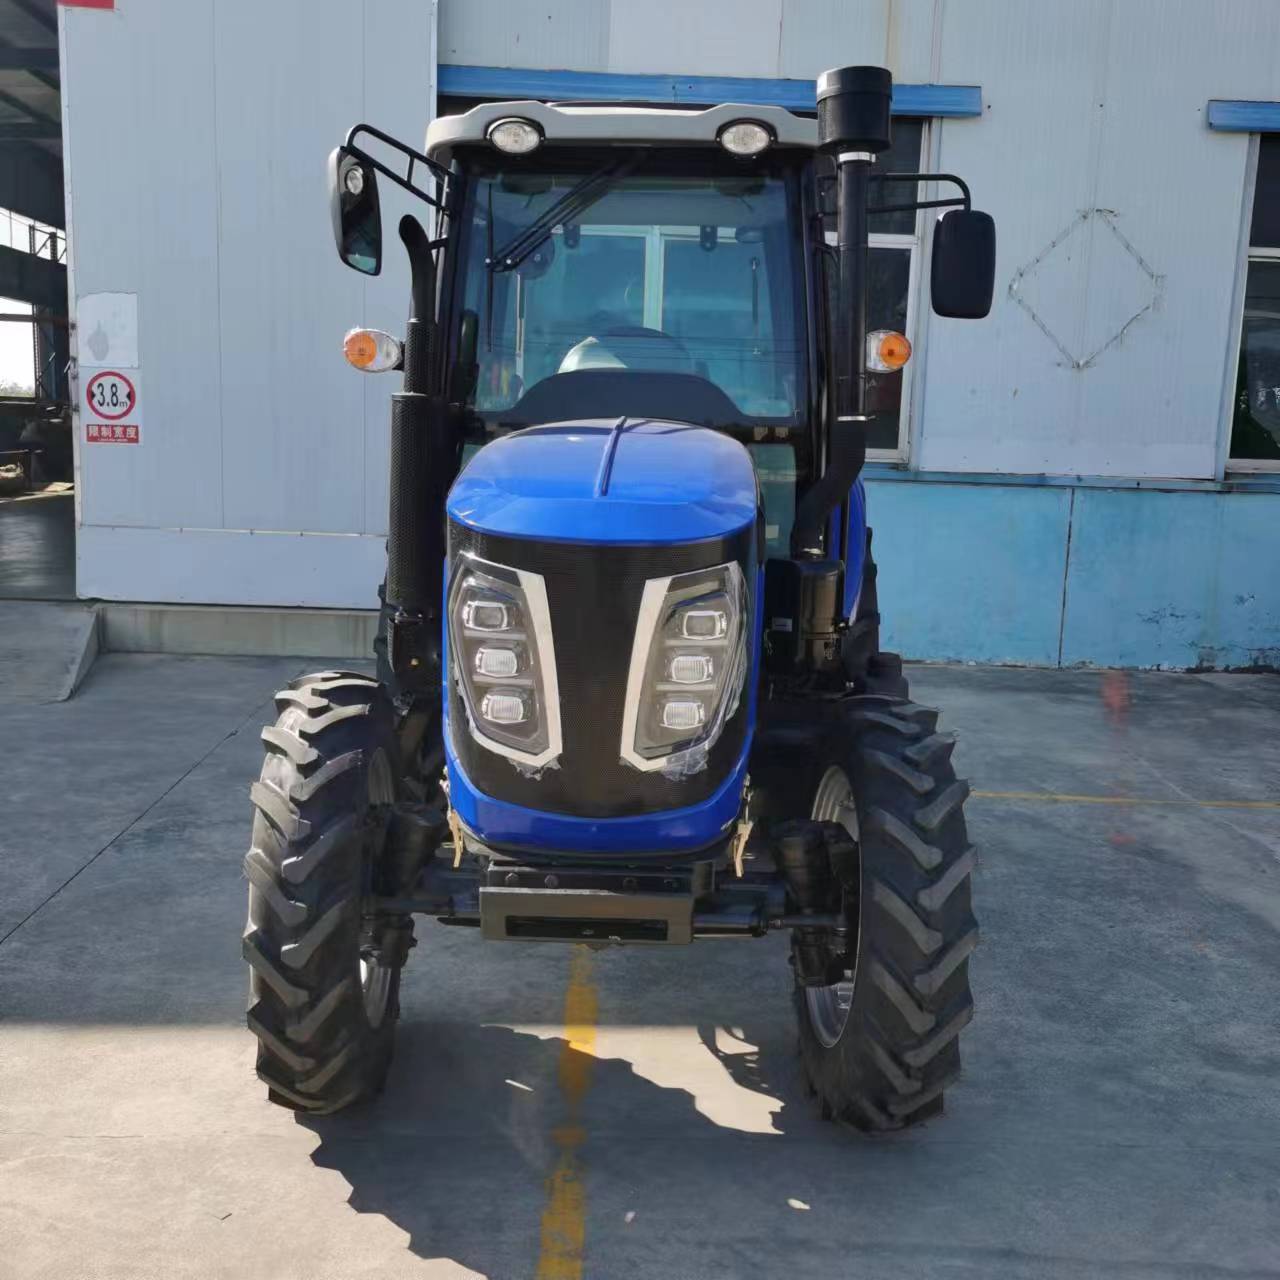 Farm tractor - CECLE Machine